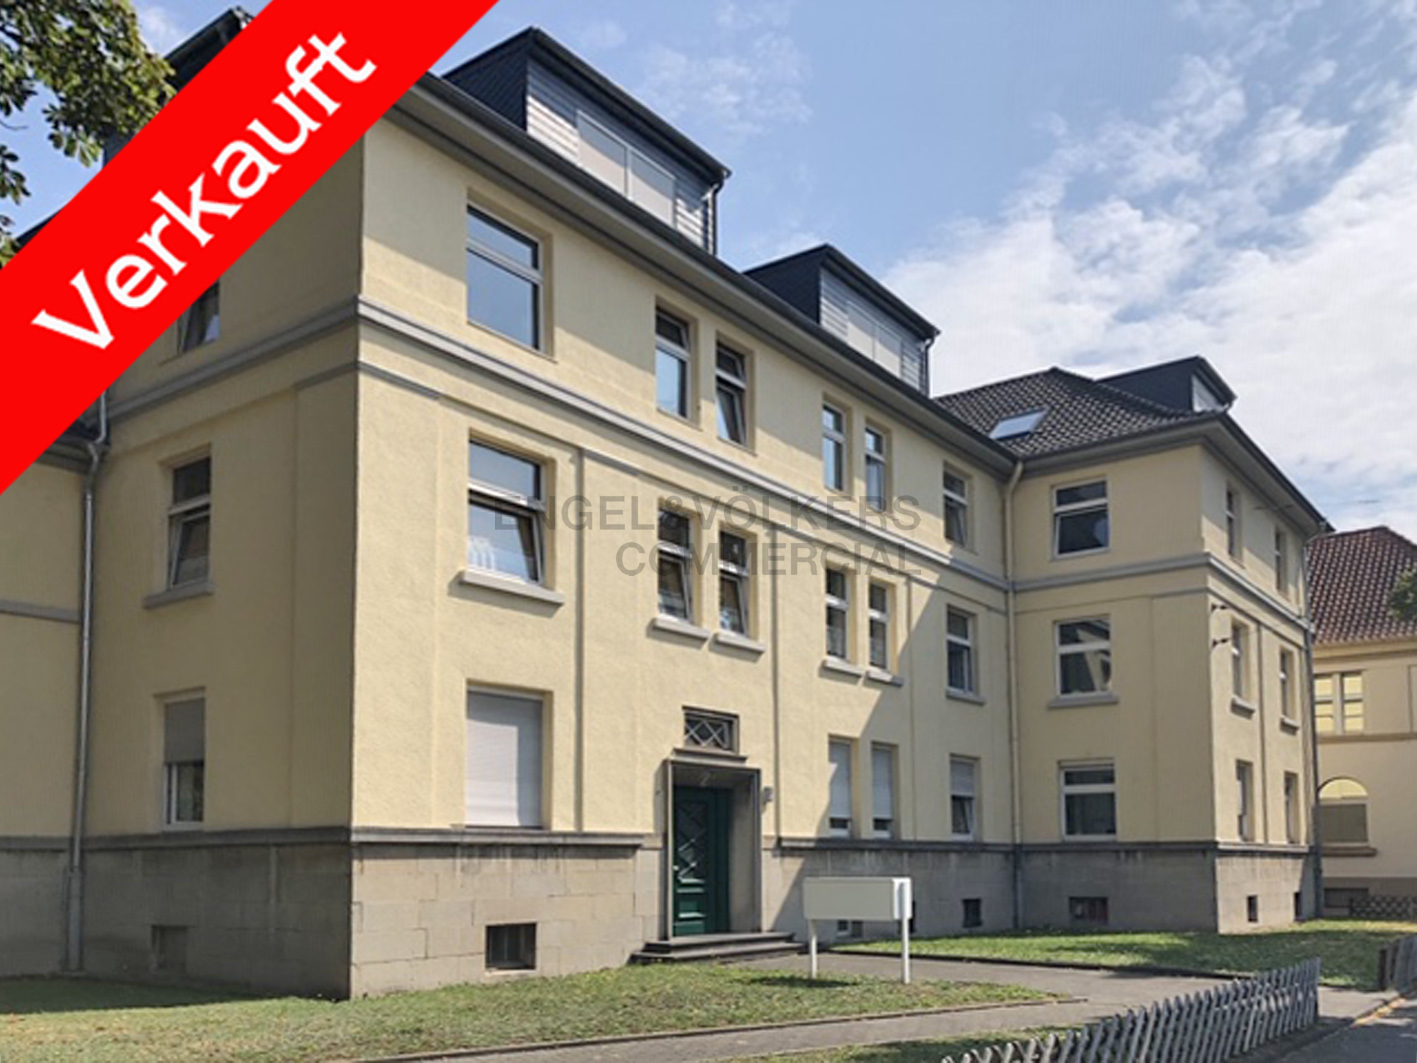 Investment / Wohn- und Geschäftshäuser in Bonn-Castell - Referenzobjekt